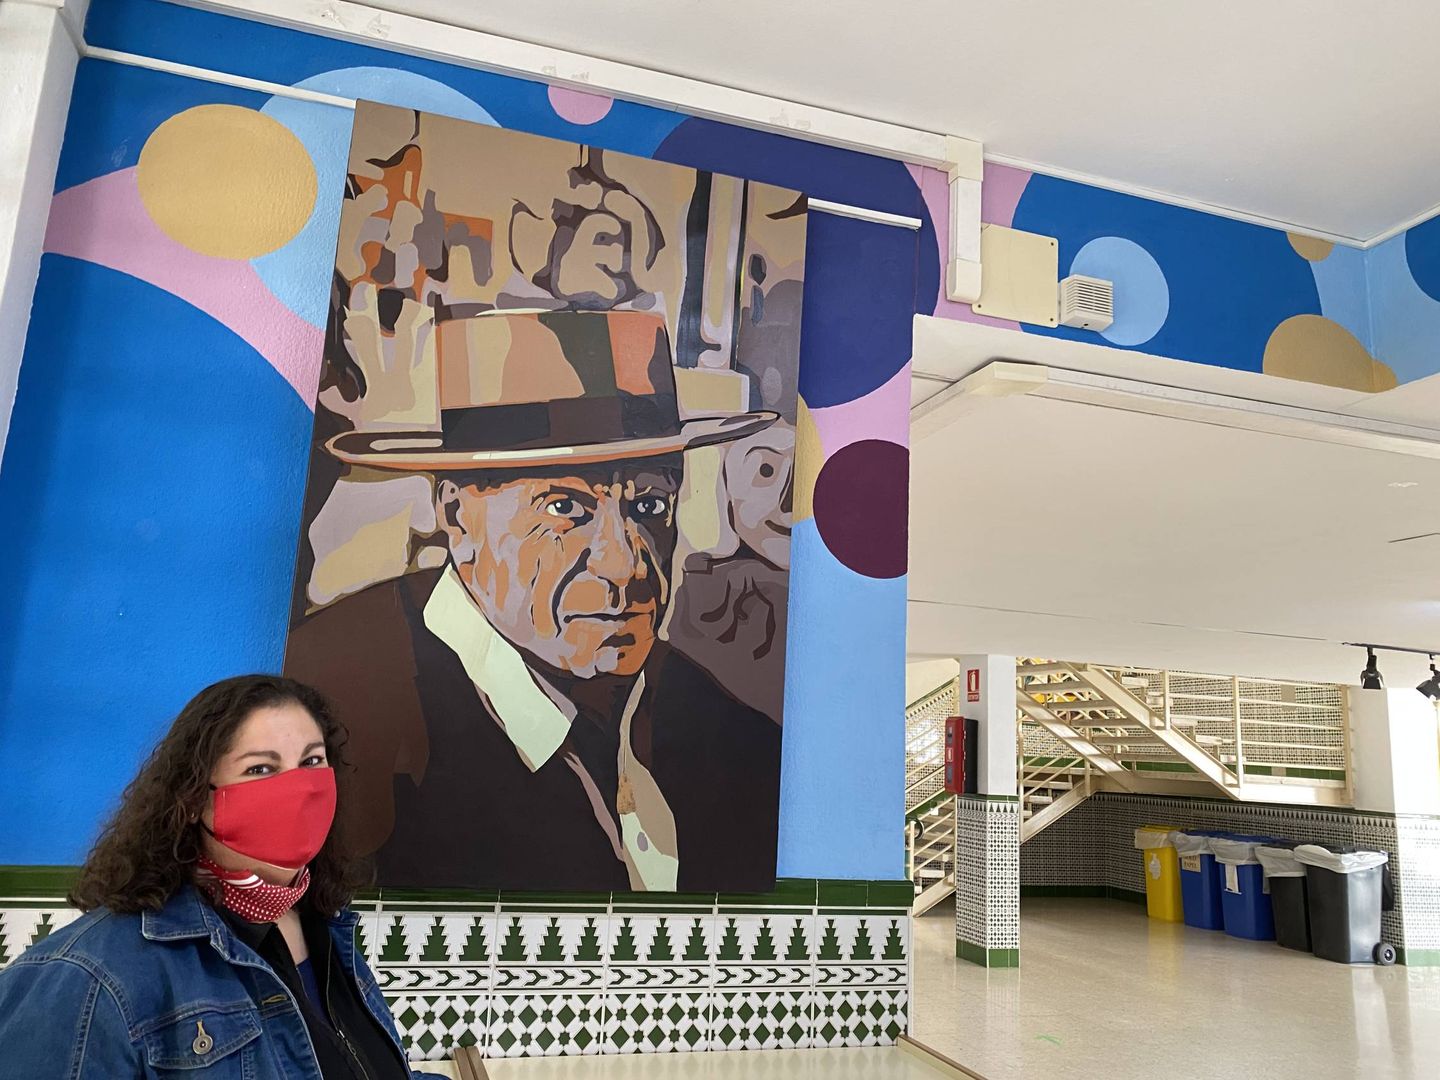 La directora del Instituto Picasso, junto a una reproducción del artista, en el interior del centro. (Agustín Rivera)